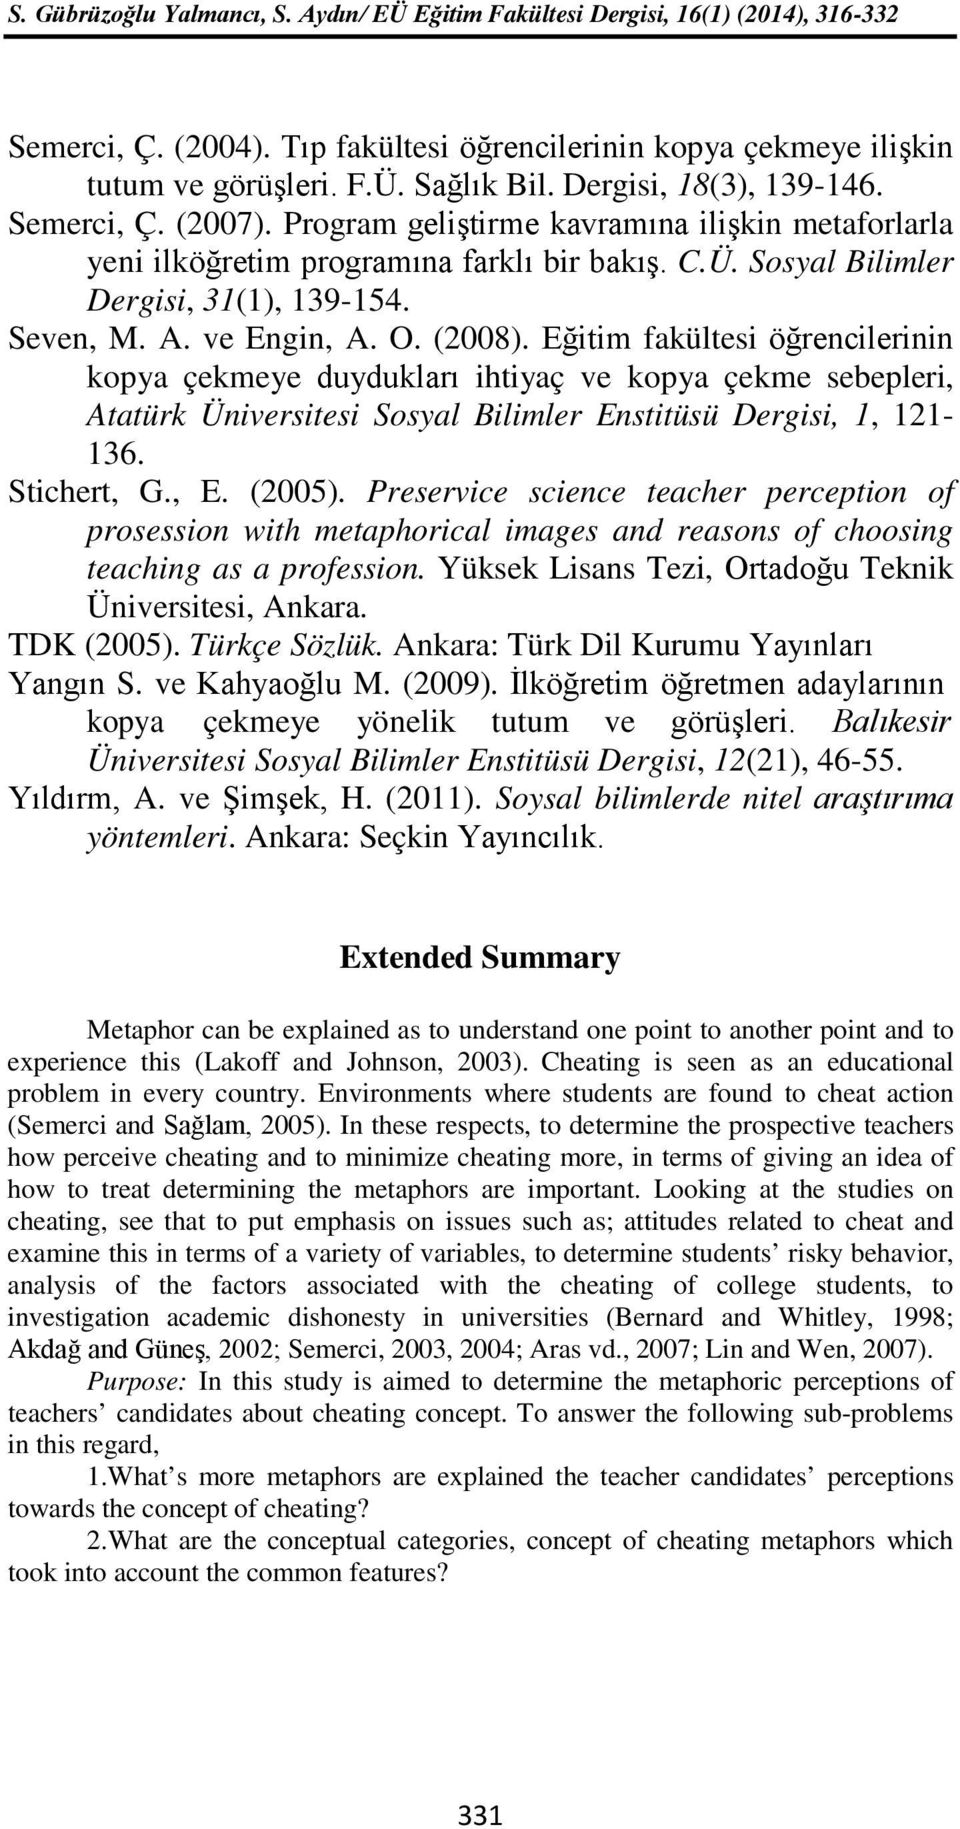 Eğitim fakültesi öğrencilerinin kopya çekmeye duydukları ihtiyaç ve kopya çekme sebepleri, Atatürk Üniversitesi Sosyal Bilimler Enstitüsü Dergisi, 1, 121-136. Stichert, G., E. (2005).